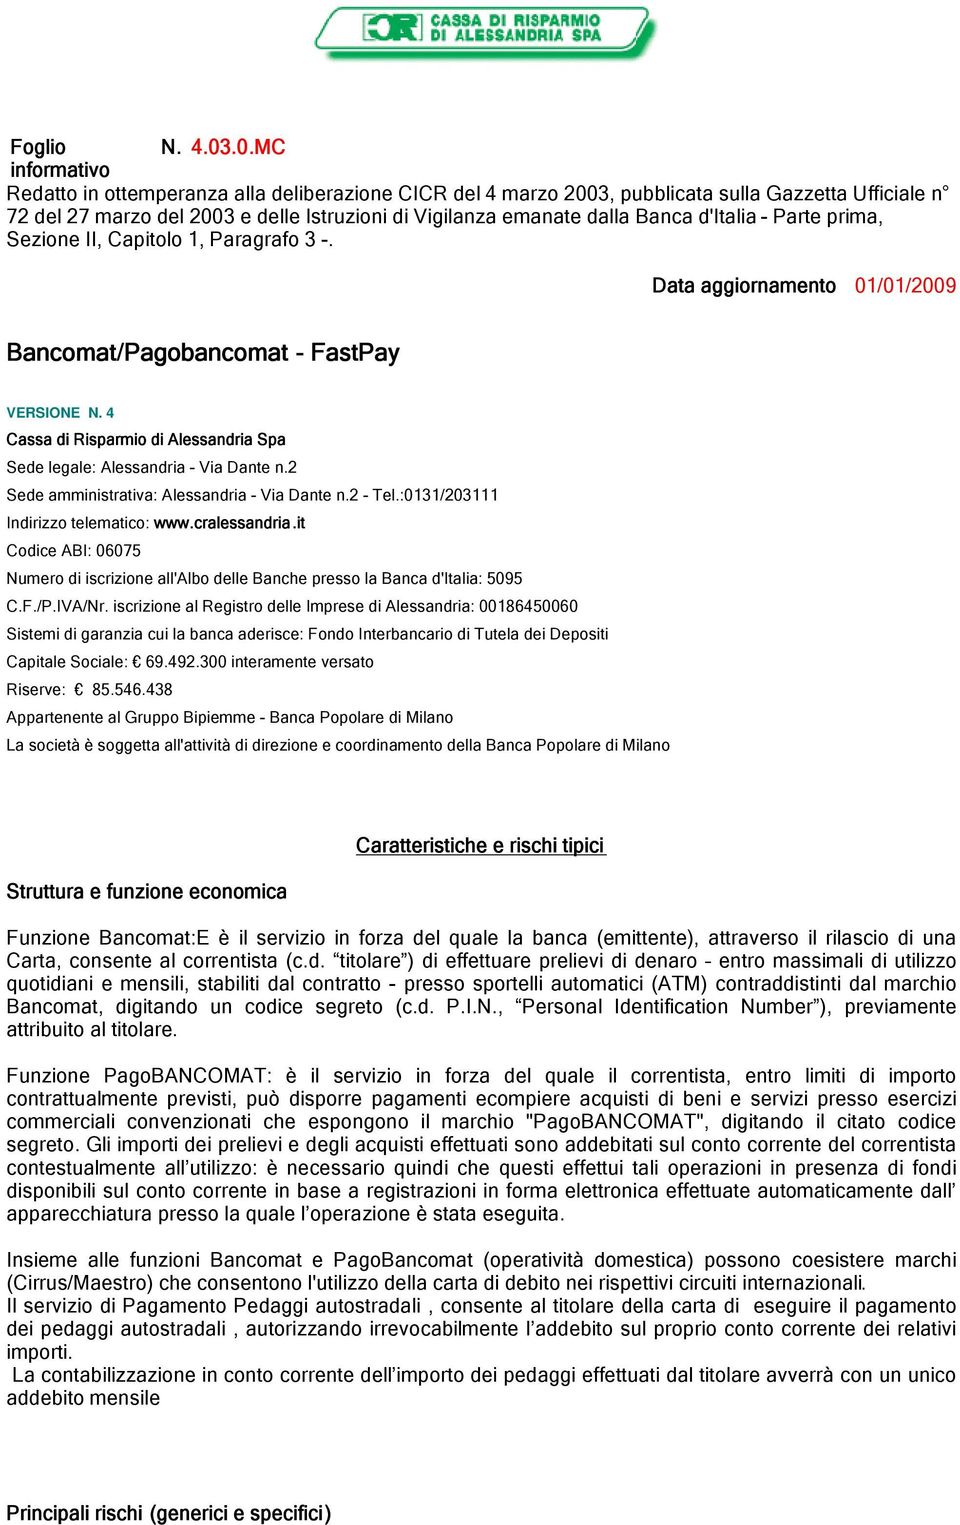 d'italia - Parte prima, Sezione II, Capitolo 1, Paragrafo 3 -. Data aggiornamento 01/01/2009 Bancomat/Pagobancomat - FastPay VERSIONE N.